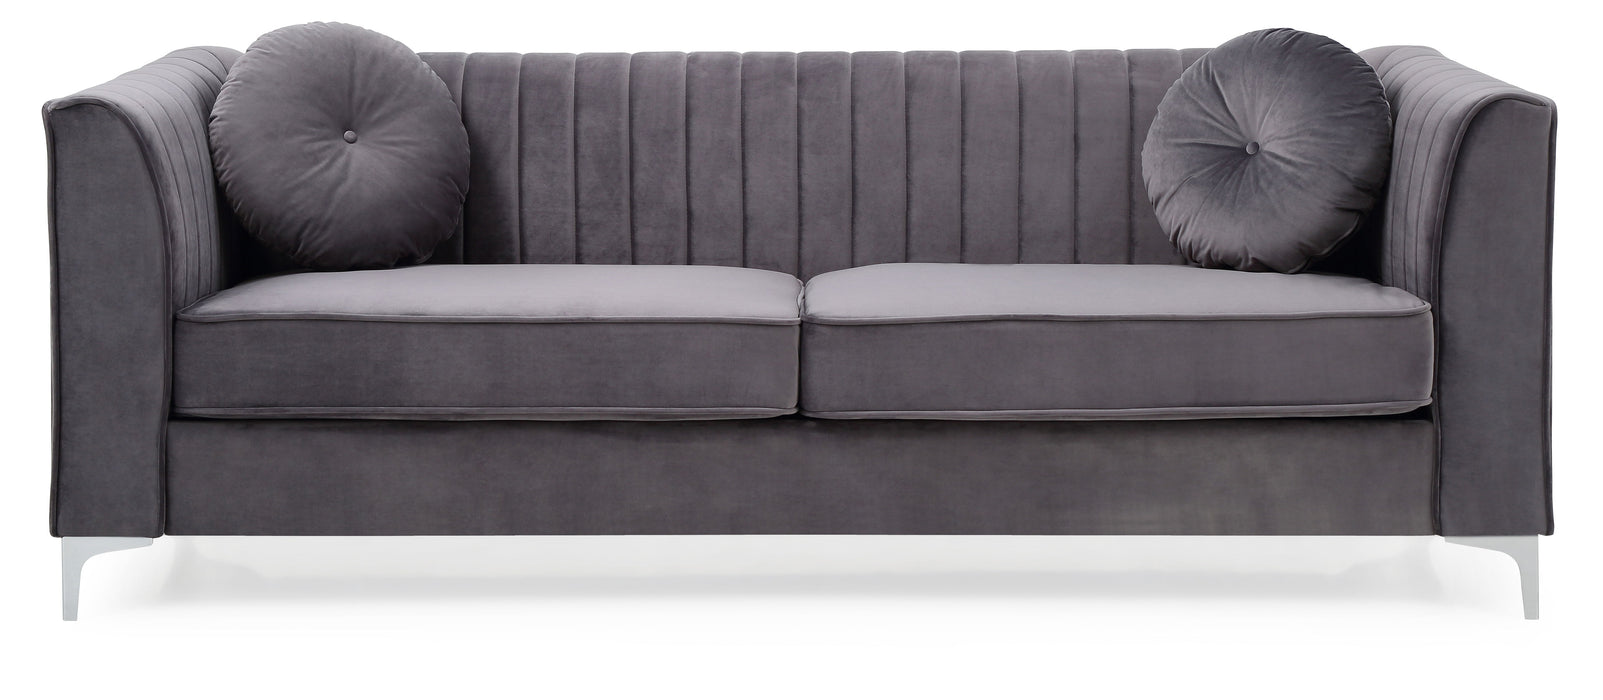 Delray - G790A-S Sofa (2 Boxes) - Gray